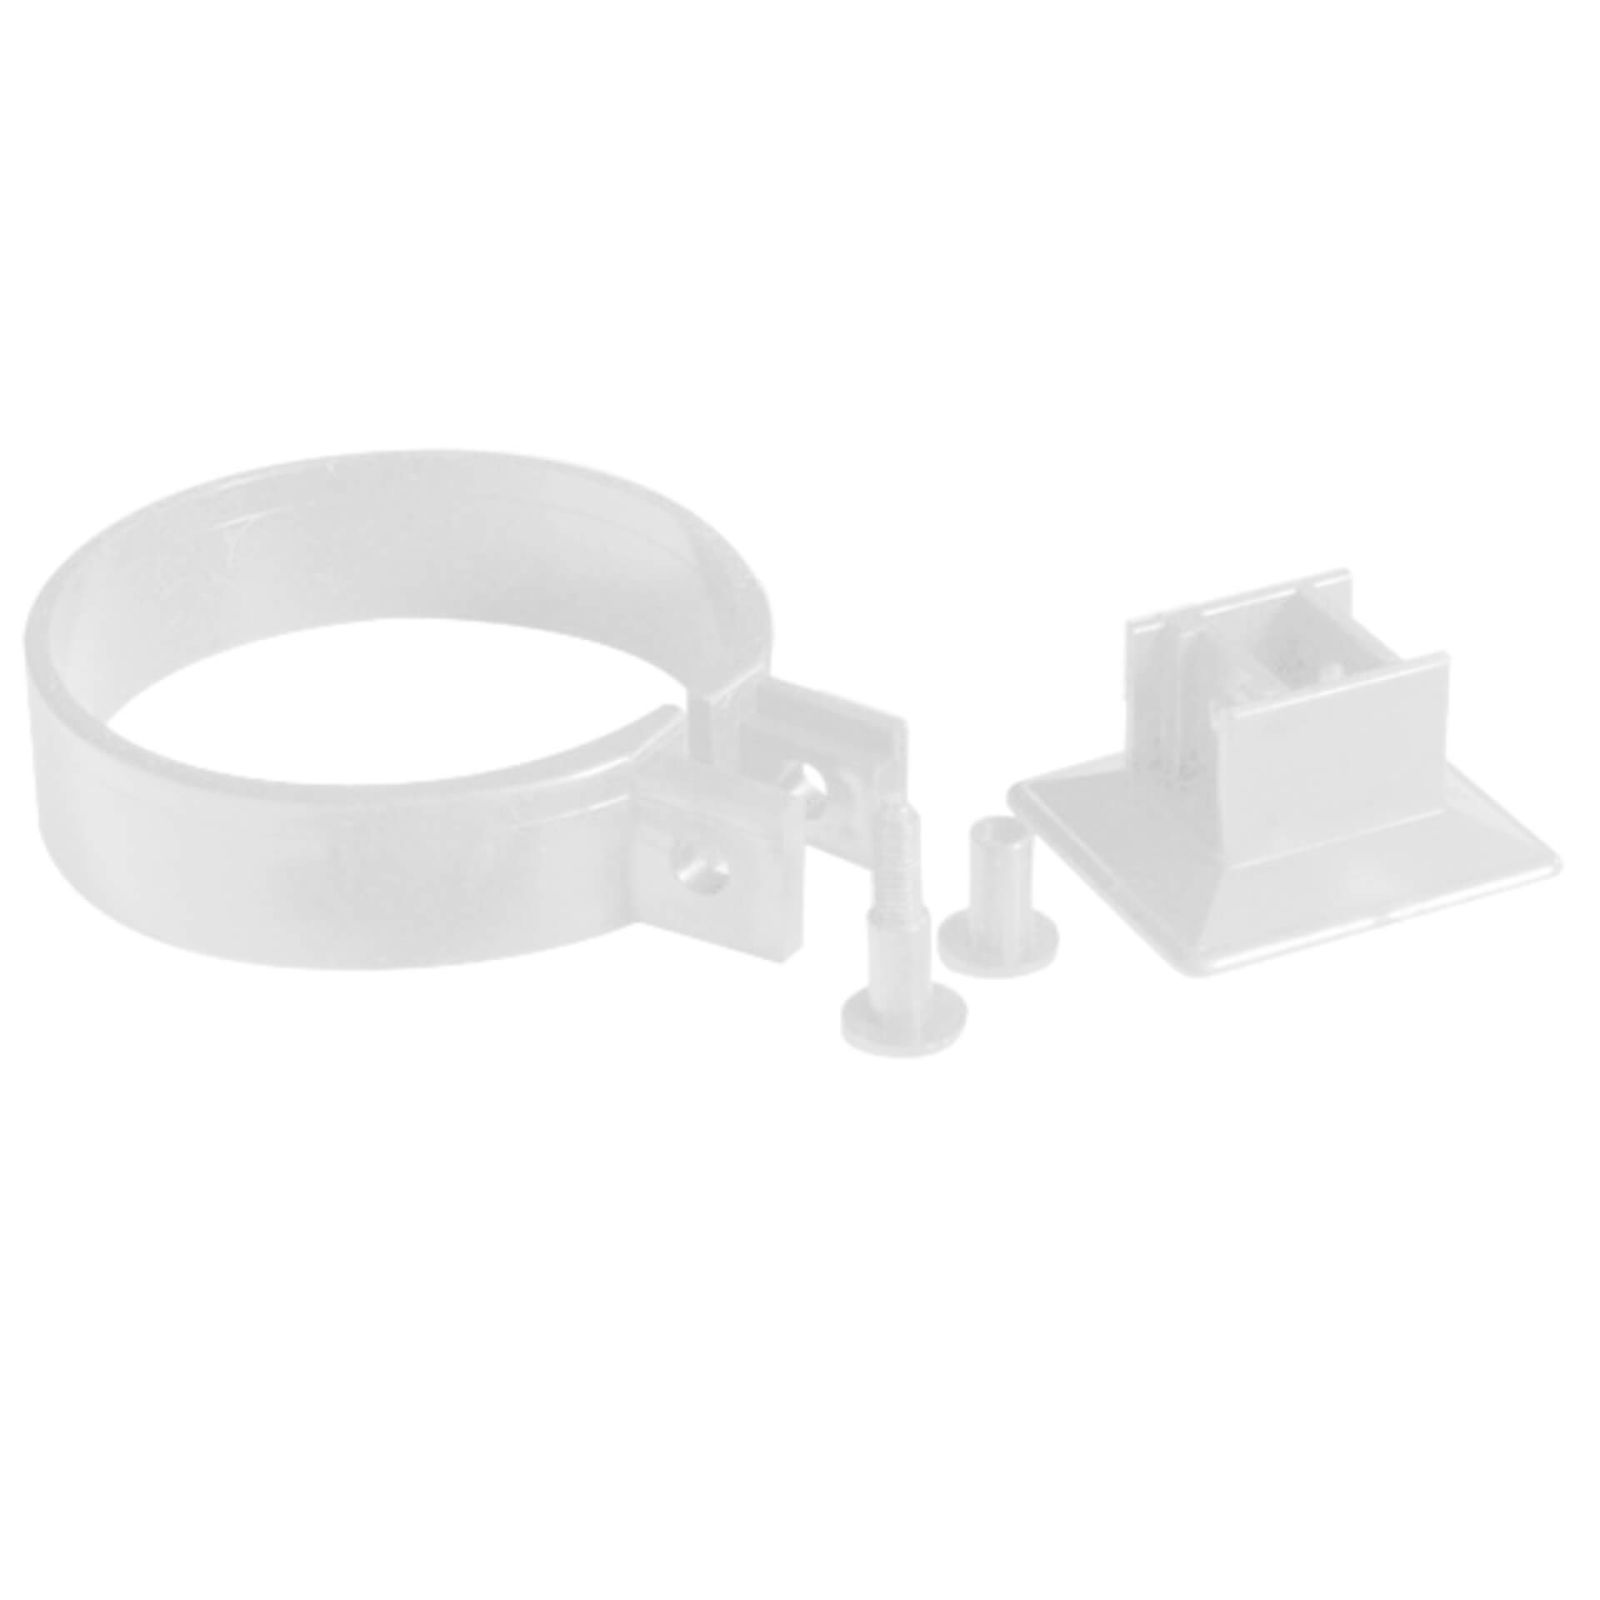 Fallrohrschellen | PVC | Ø 75 mm | Farbe Weiß